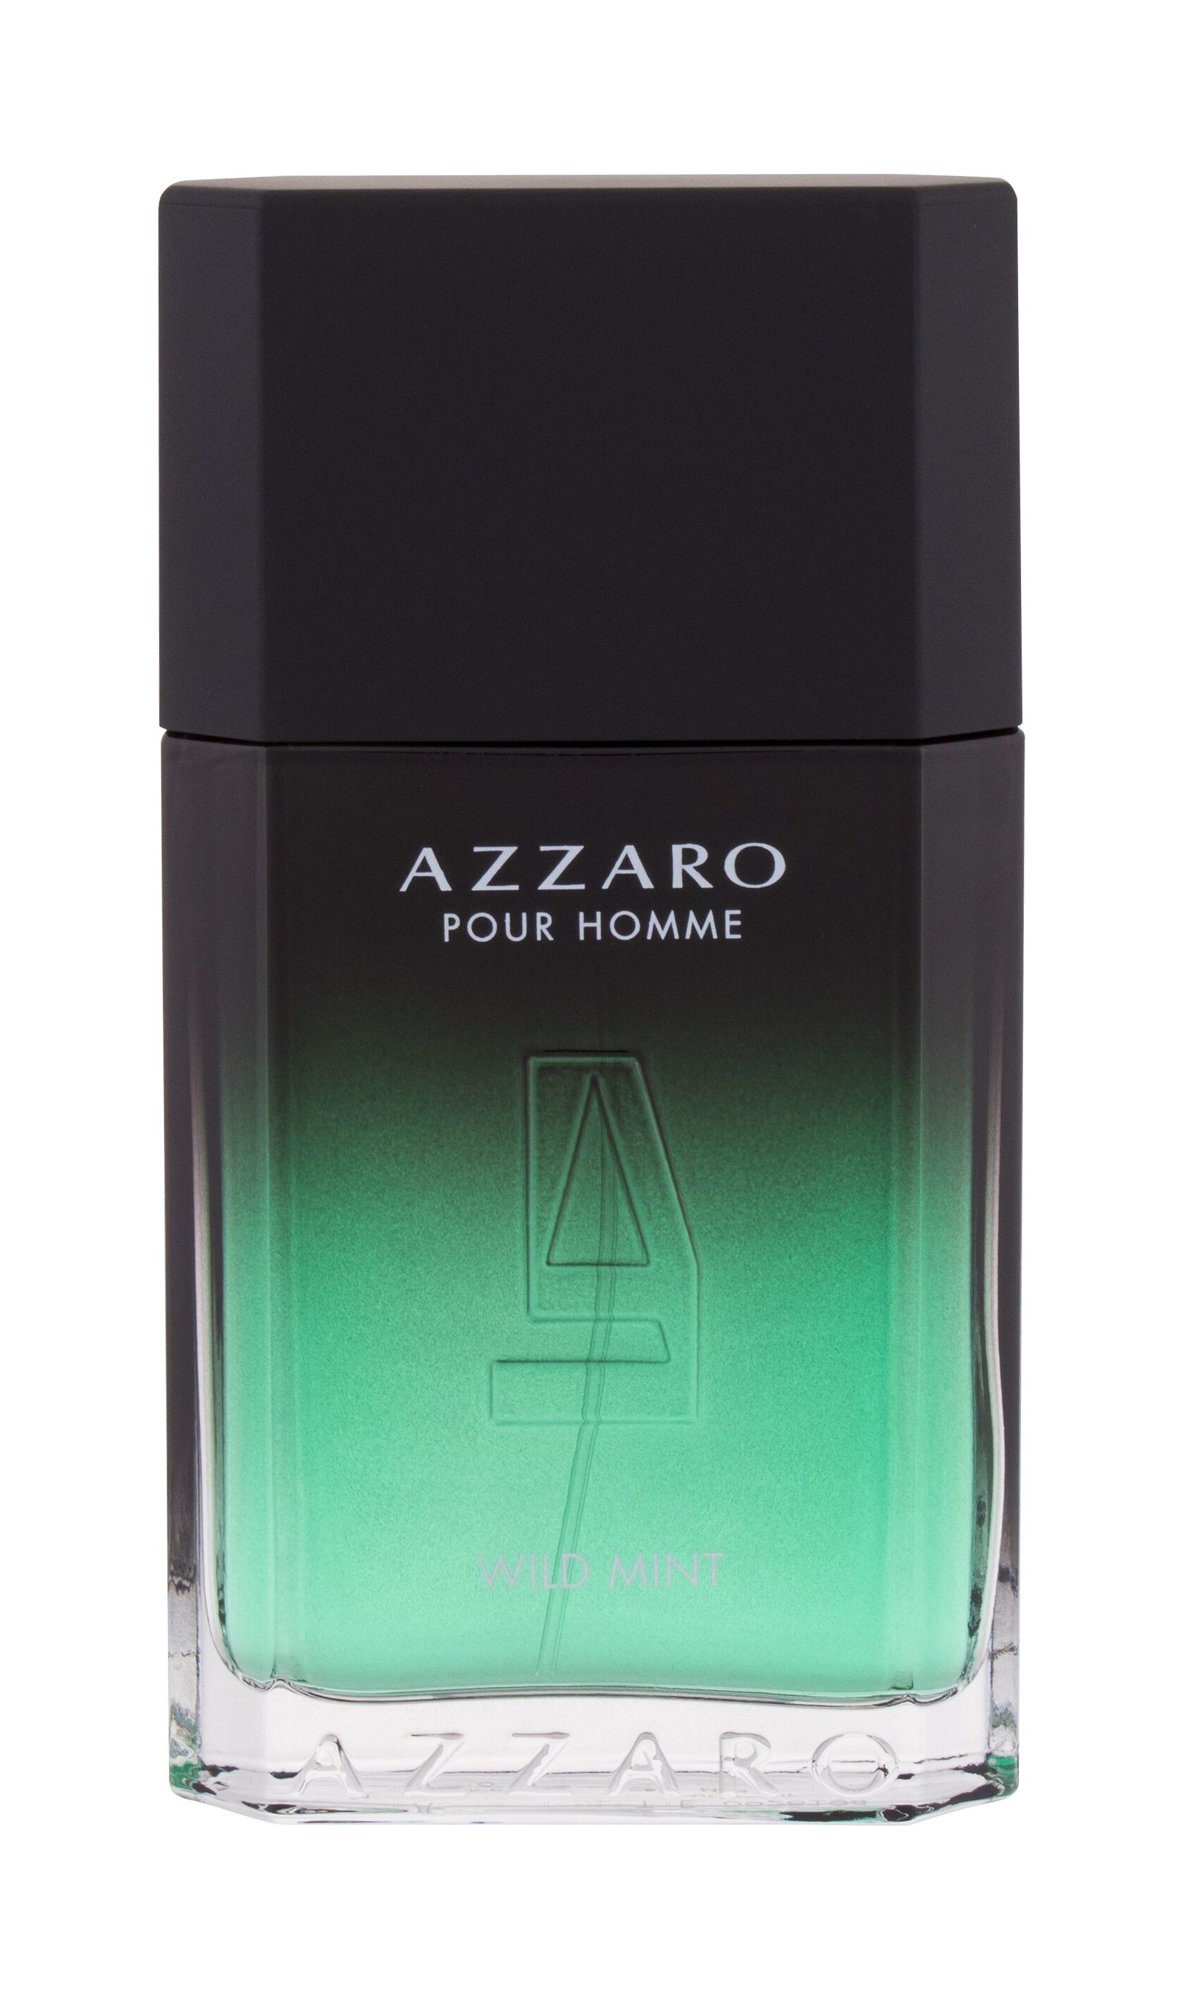 Azzaro Wild Mint, Toaletní voda 100ml